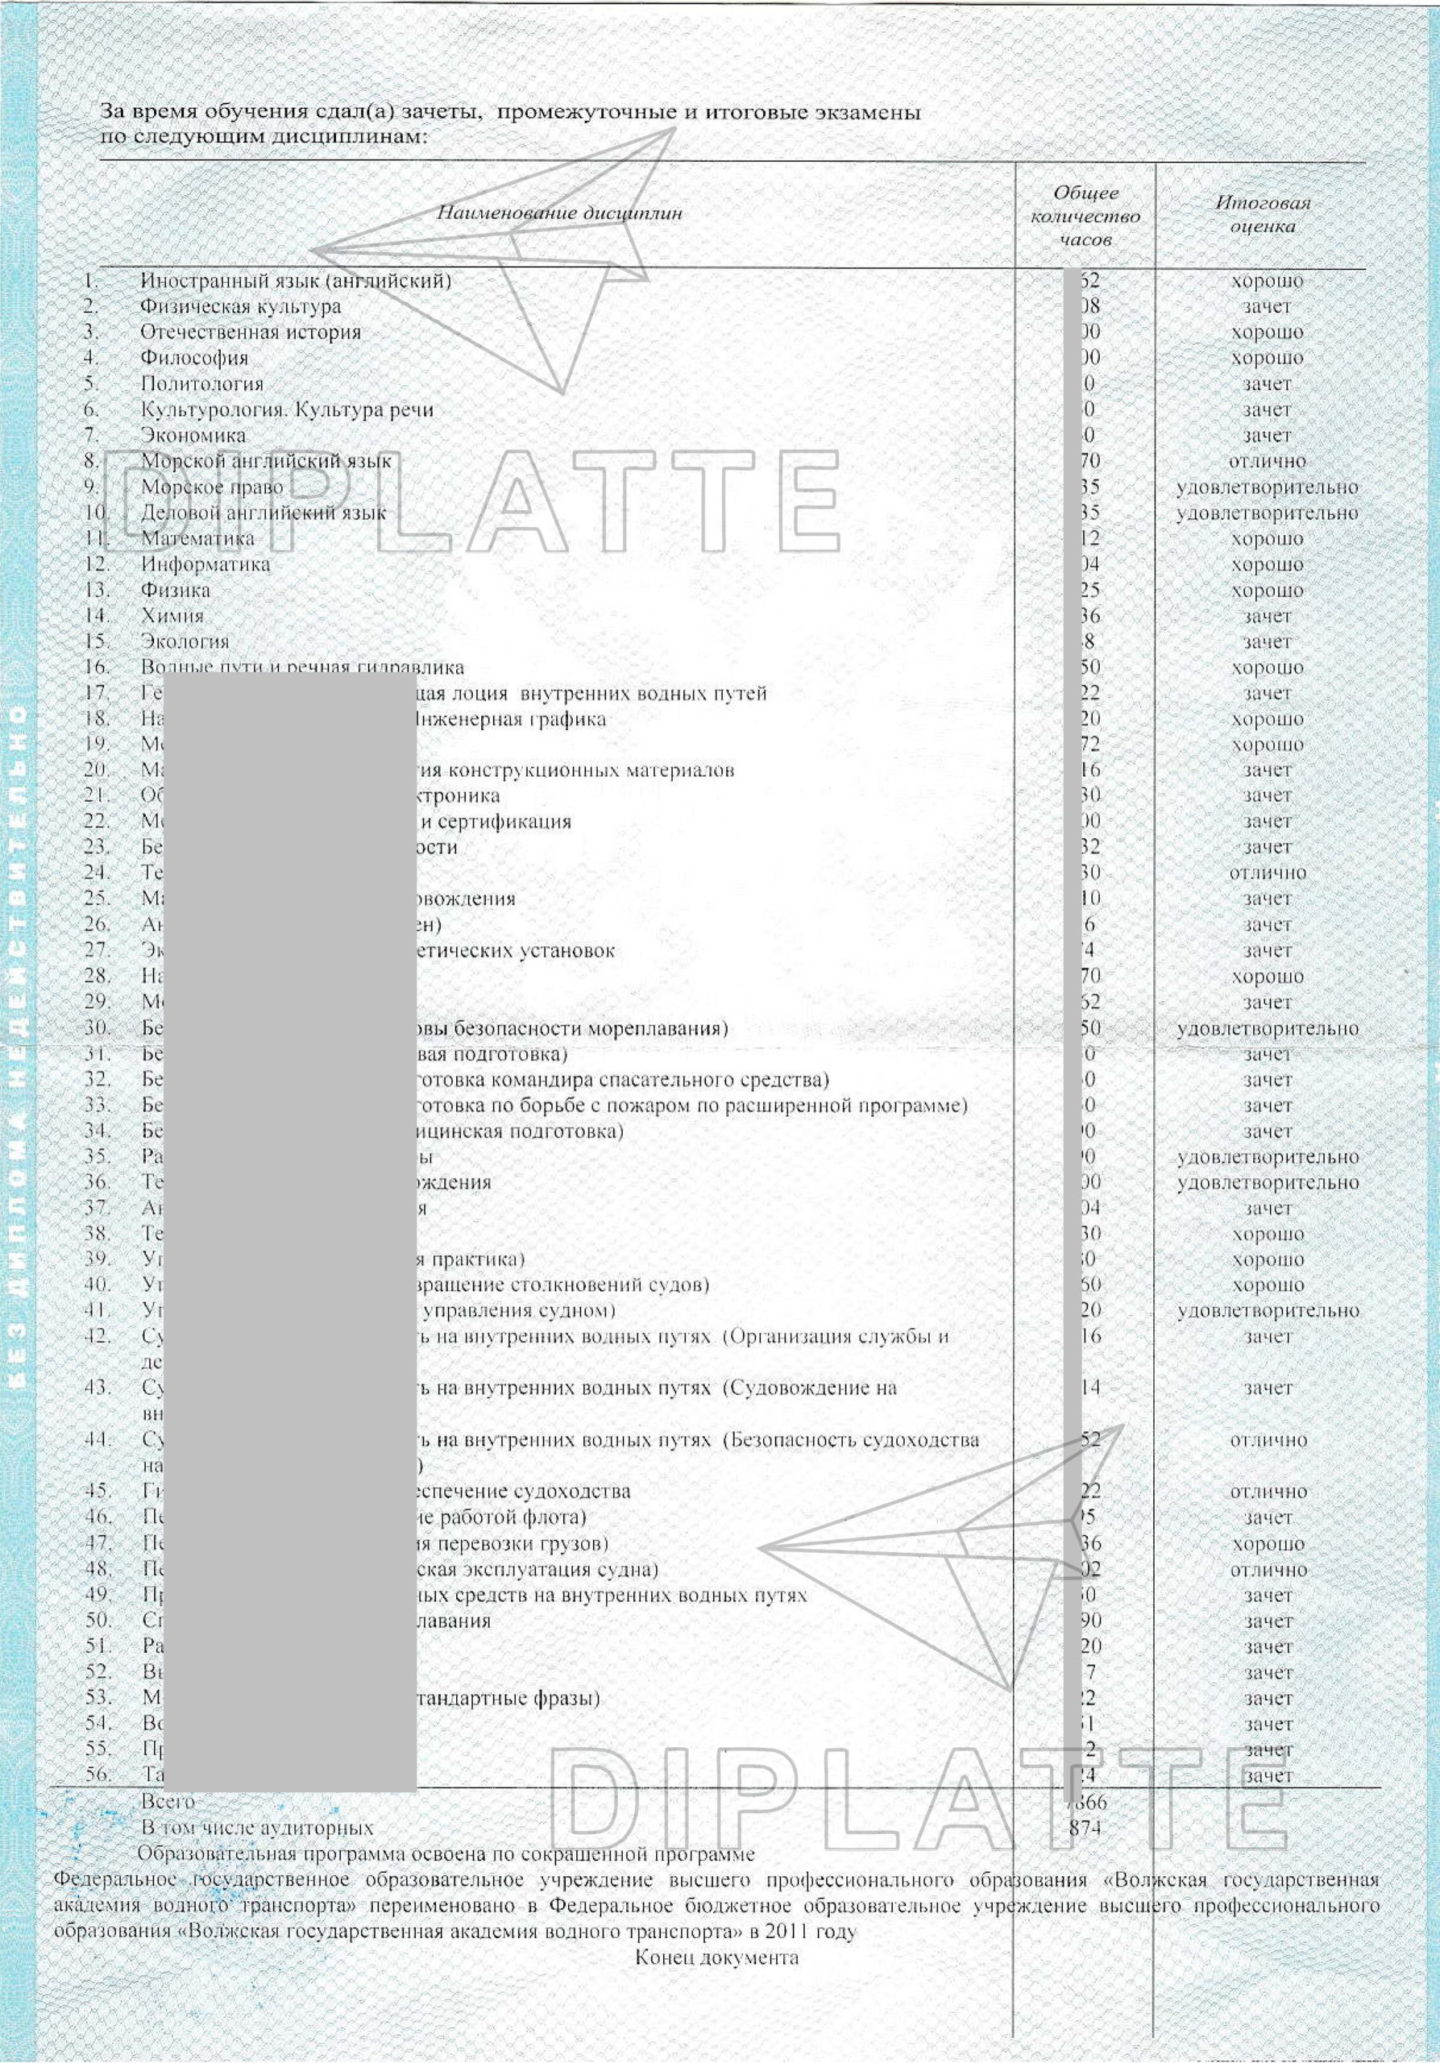 Приложение диплома ВГАВТ Судовождение 2012 г. (предметы)